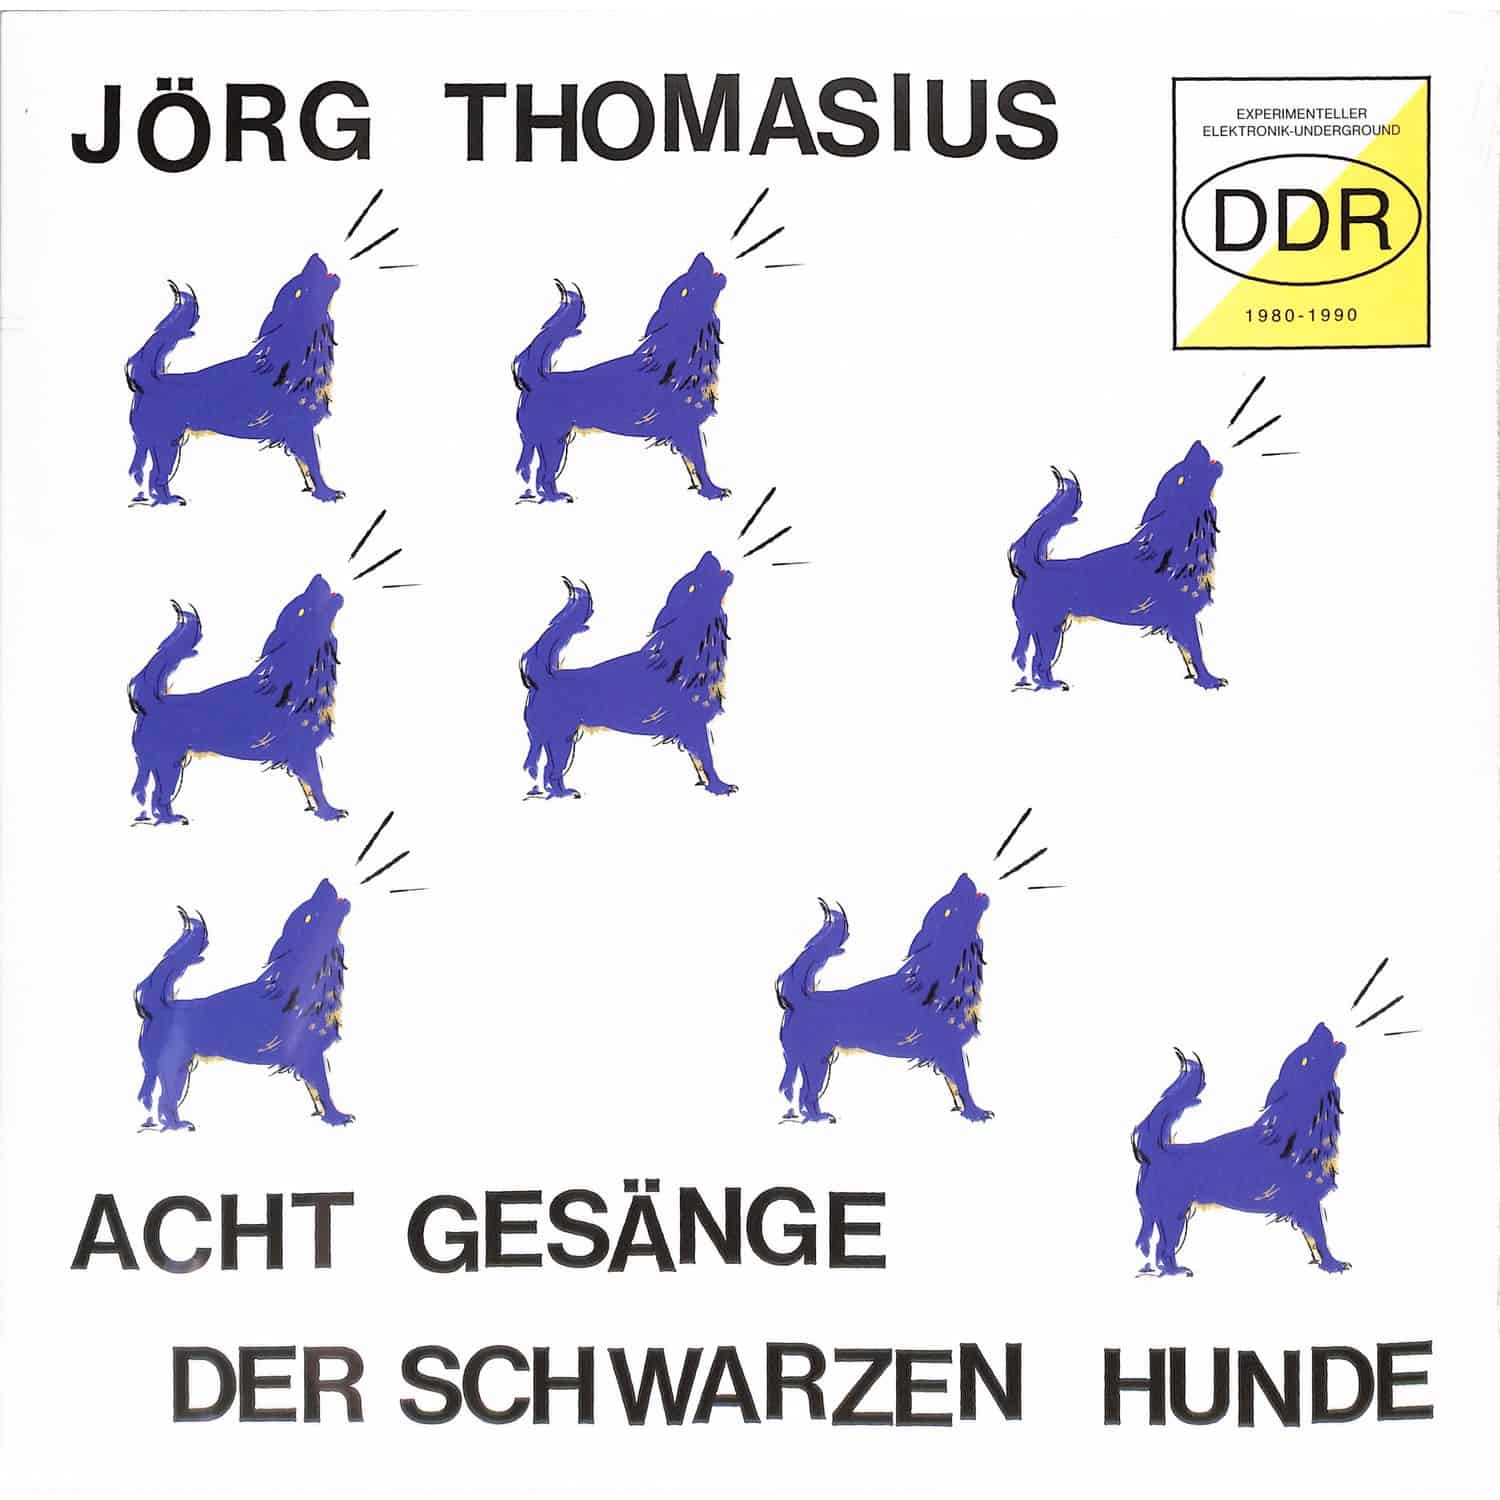 Joerg Thomasius - ACHT GESAENGE DER SCHWARZEN HUNDE 